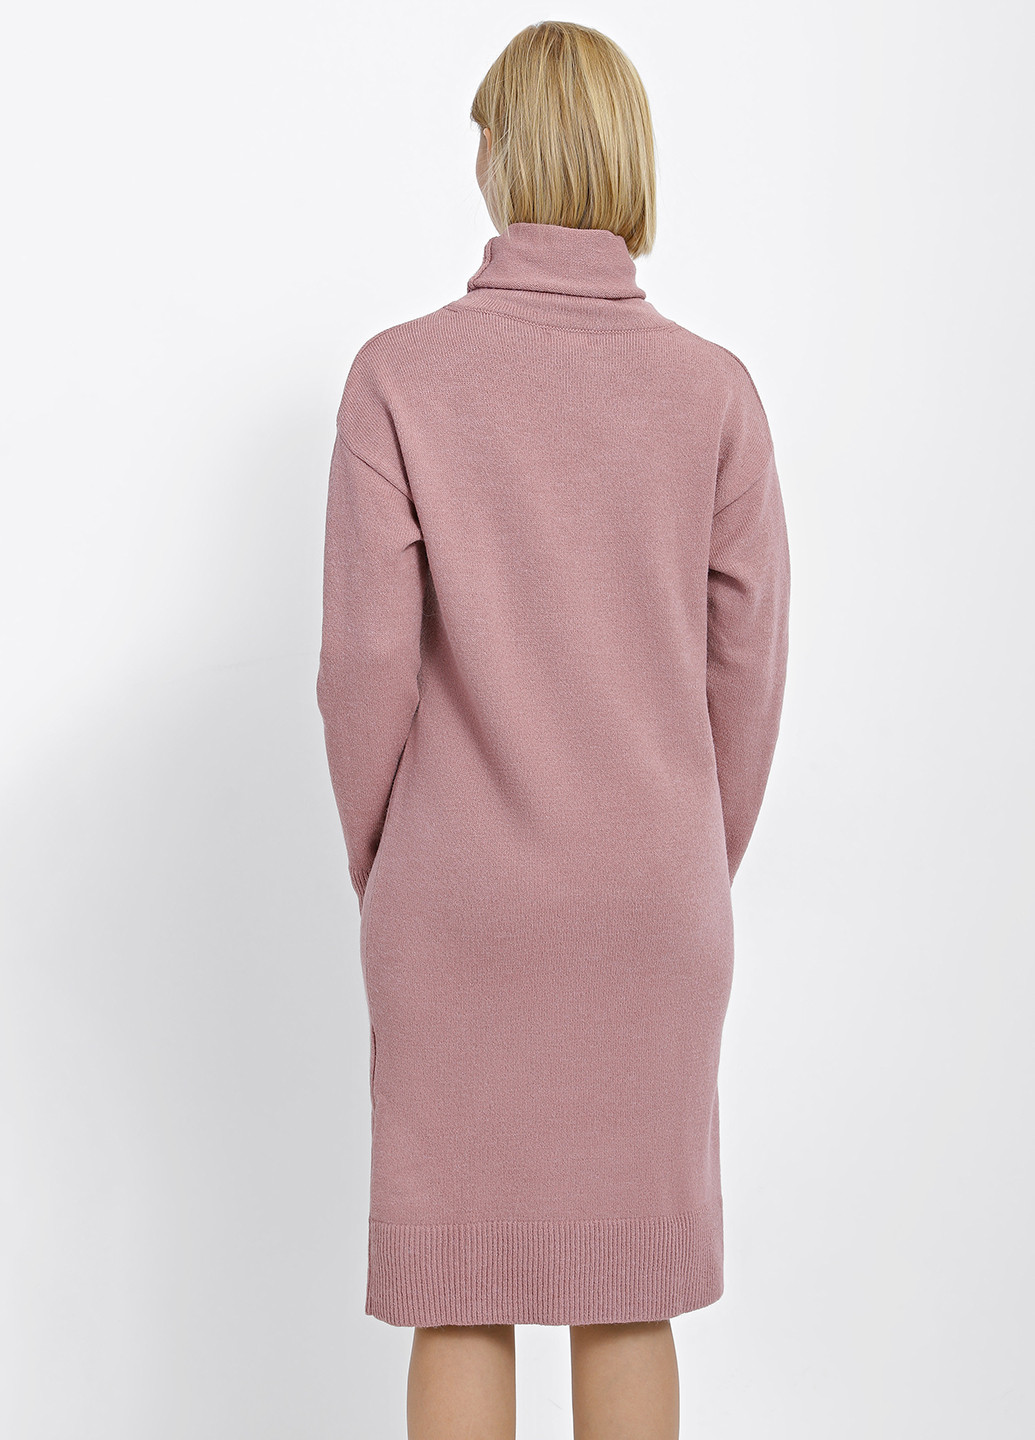 Пудровое кэжуал платье платье-свитер Sewel однотонное